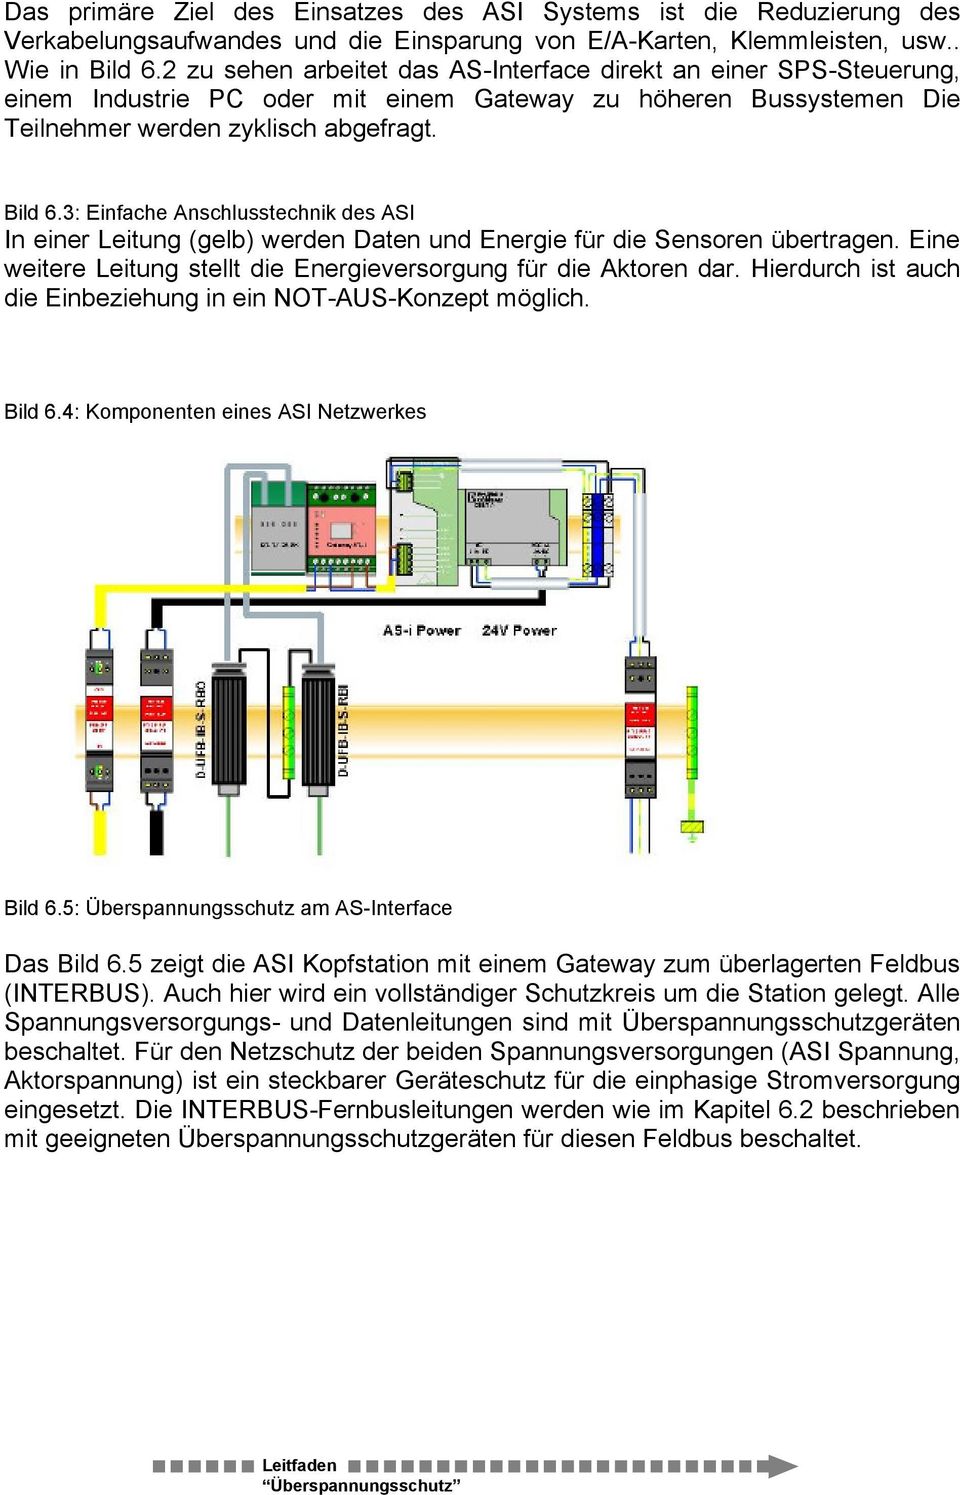 (gelb) werden Daten und Energie für die Sensoren übertragen Eine weitere Leitung stellt die Energieversorgung für die Aktoren dar Hierdurch ist auch die Einbeziehung in ein NOT-AUS-Konzept möglich